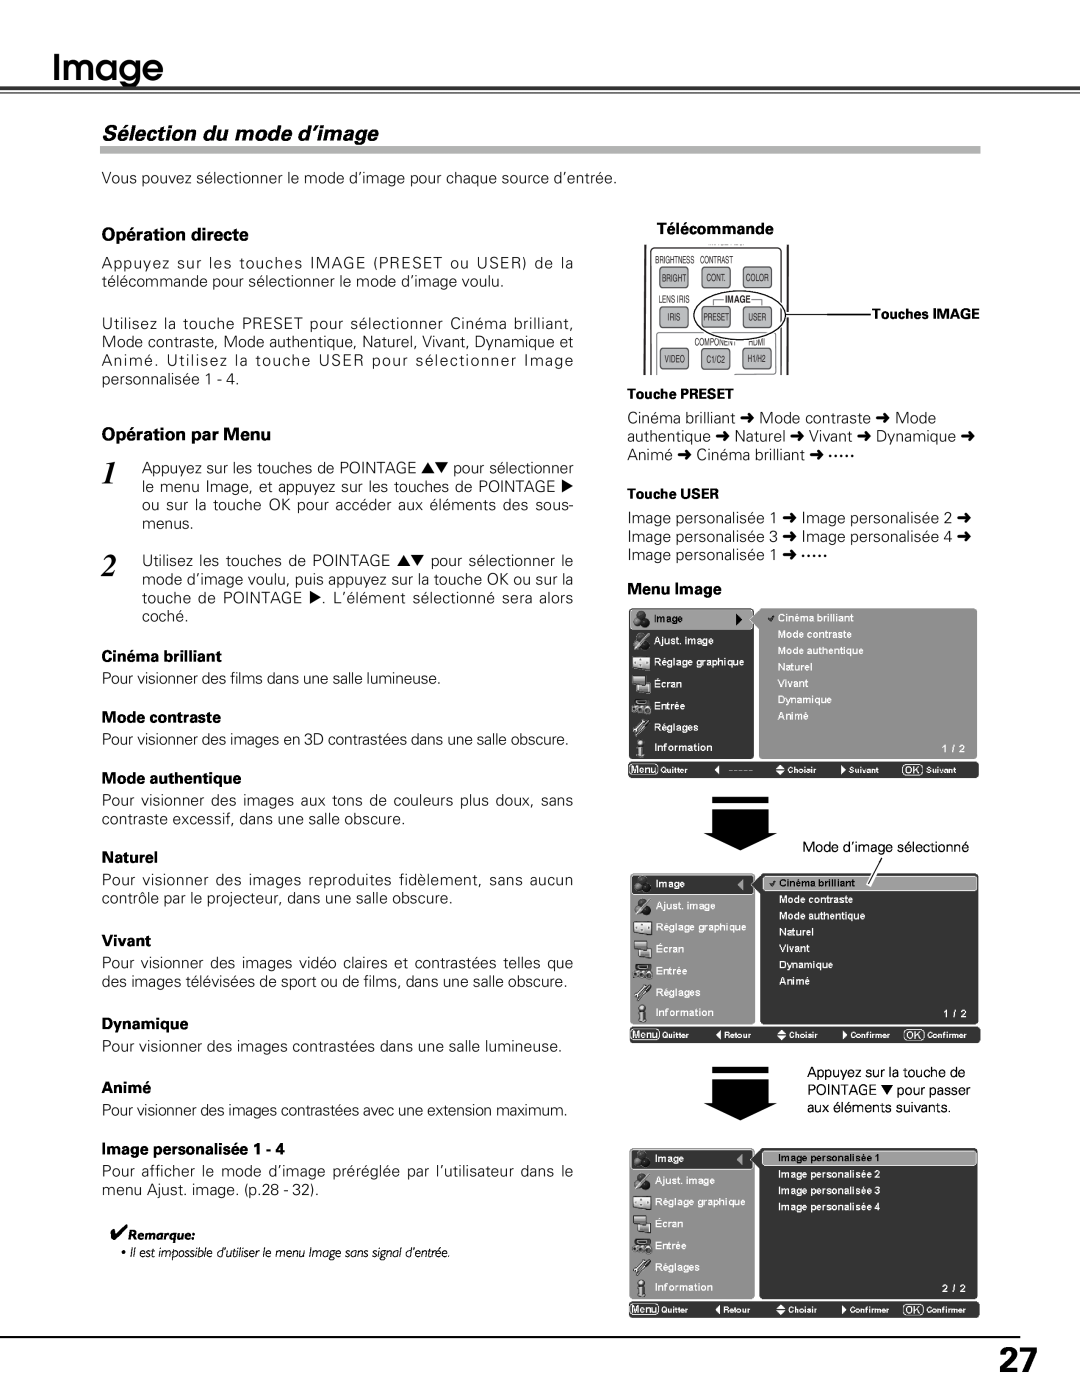 Sanyo PLV-Z5BK manual Image, Sélection du mode d’image 